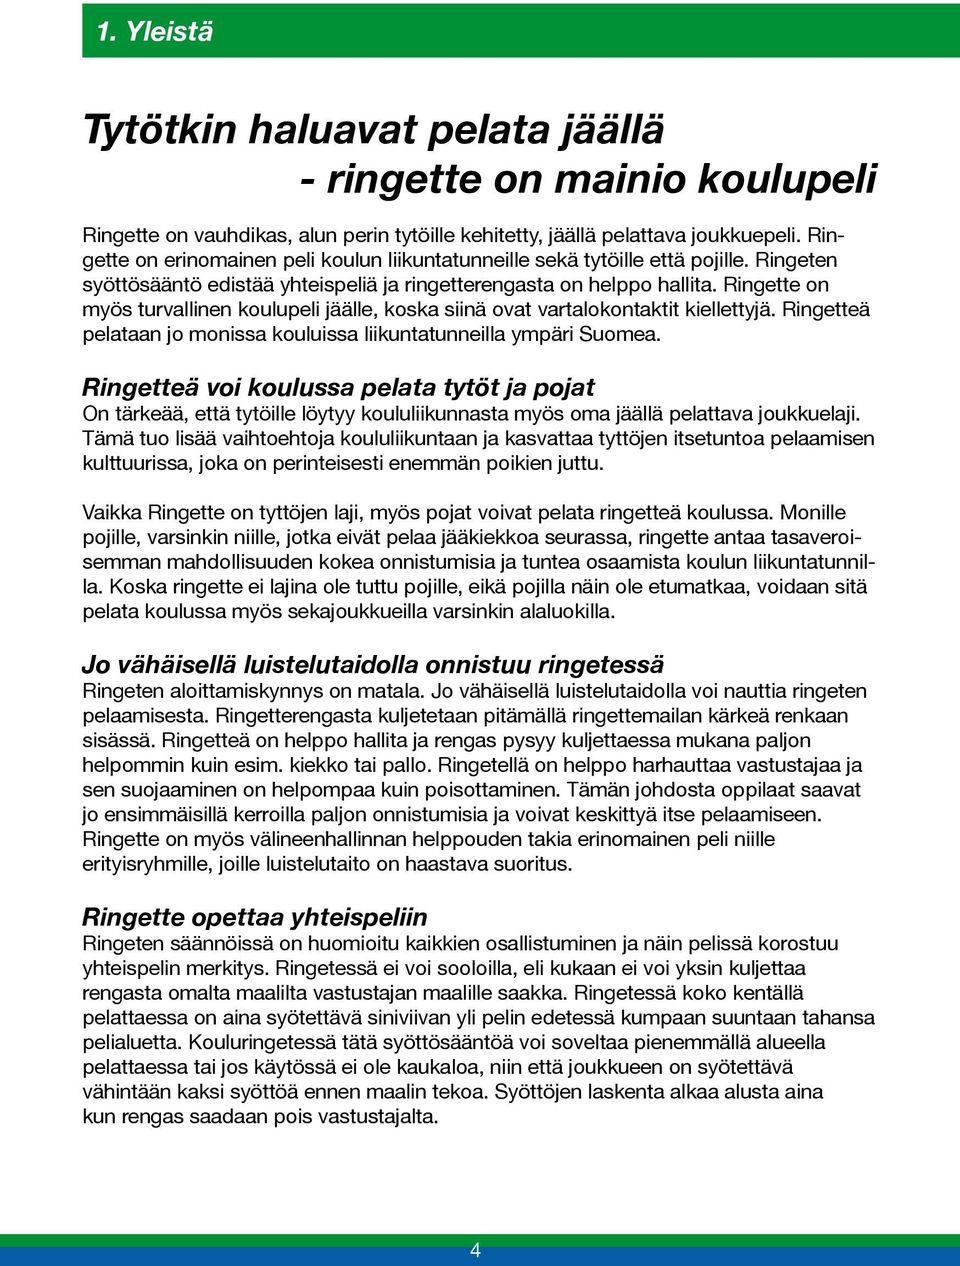 Ringette on myös turvallinen koulupeli jäälle, koska siinä ovat vartalokontaktit kiellettyjä. Ringetteä pelataan jo monissa kouluissa liikuntatunneilla ympäri Suomea.